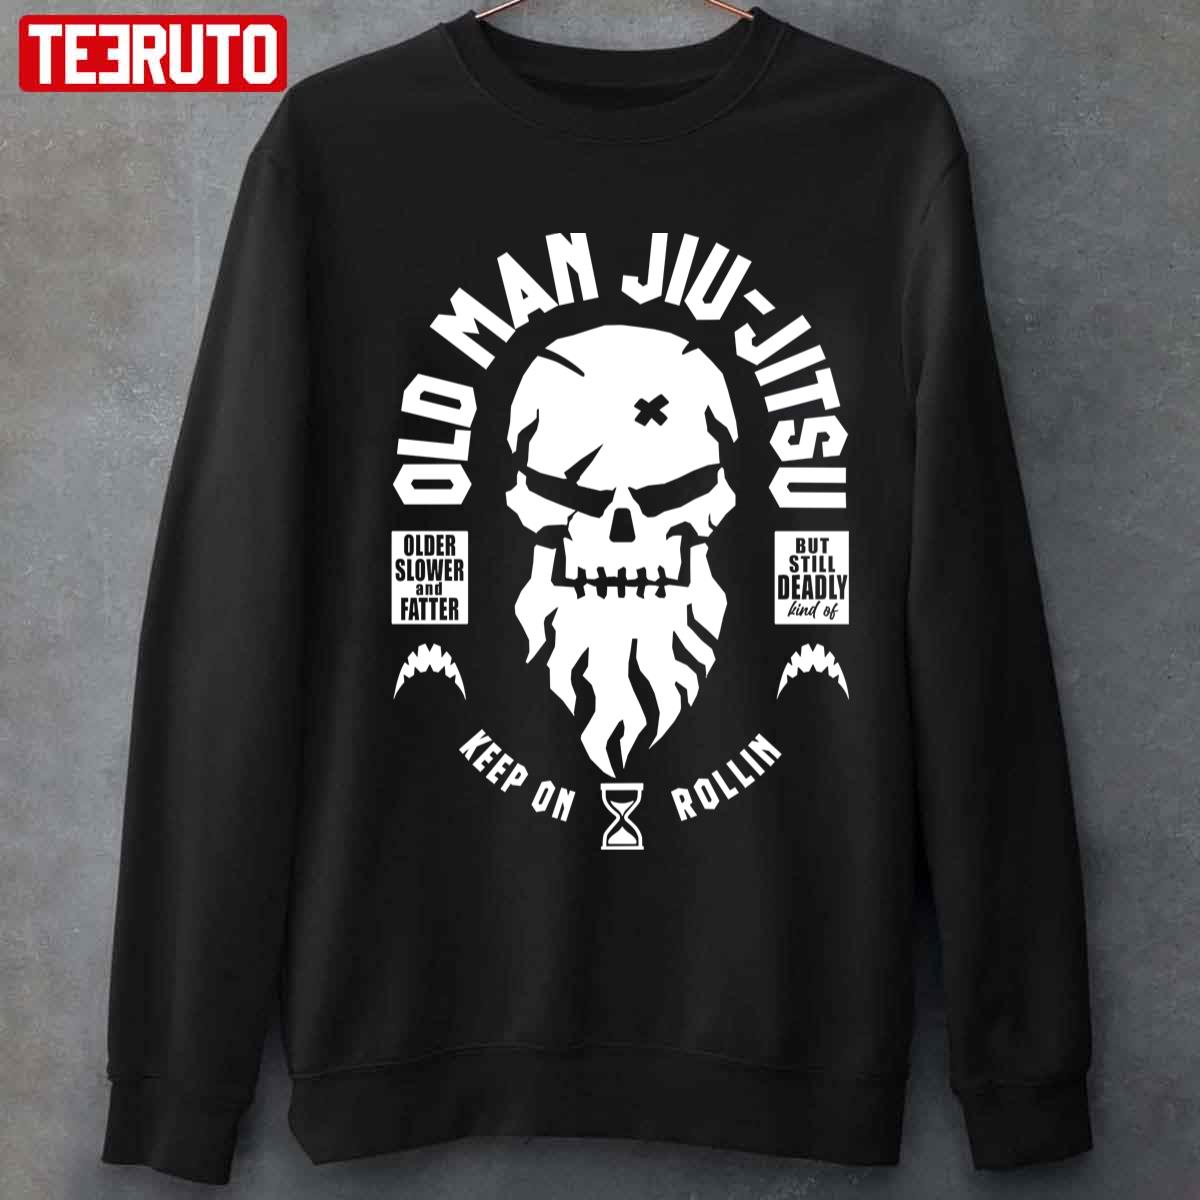 Old Man Jiu Jitsu Unisex T-shirt